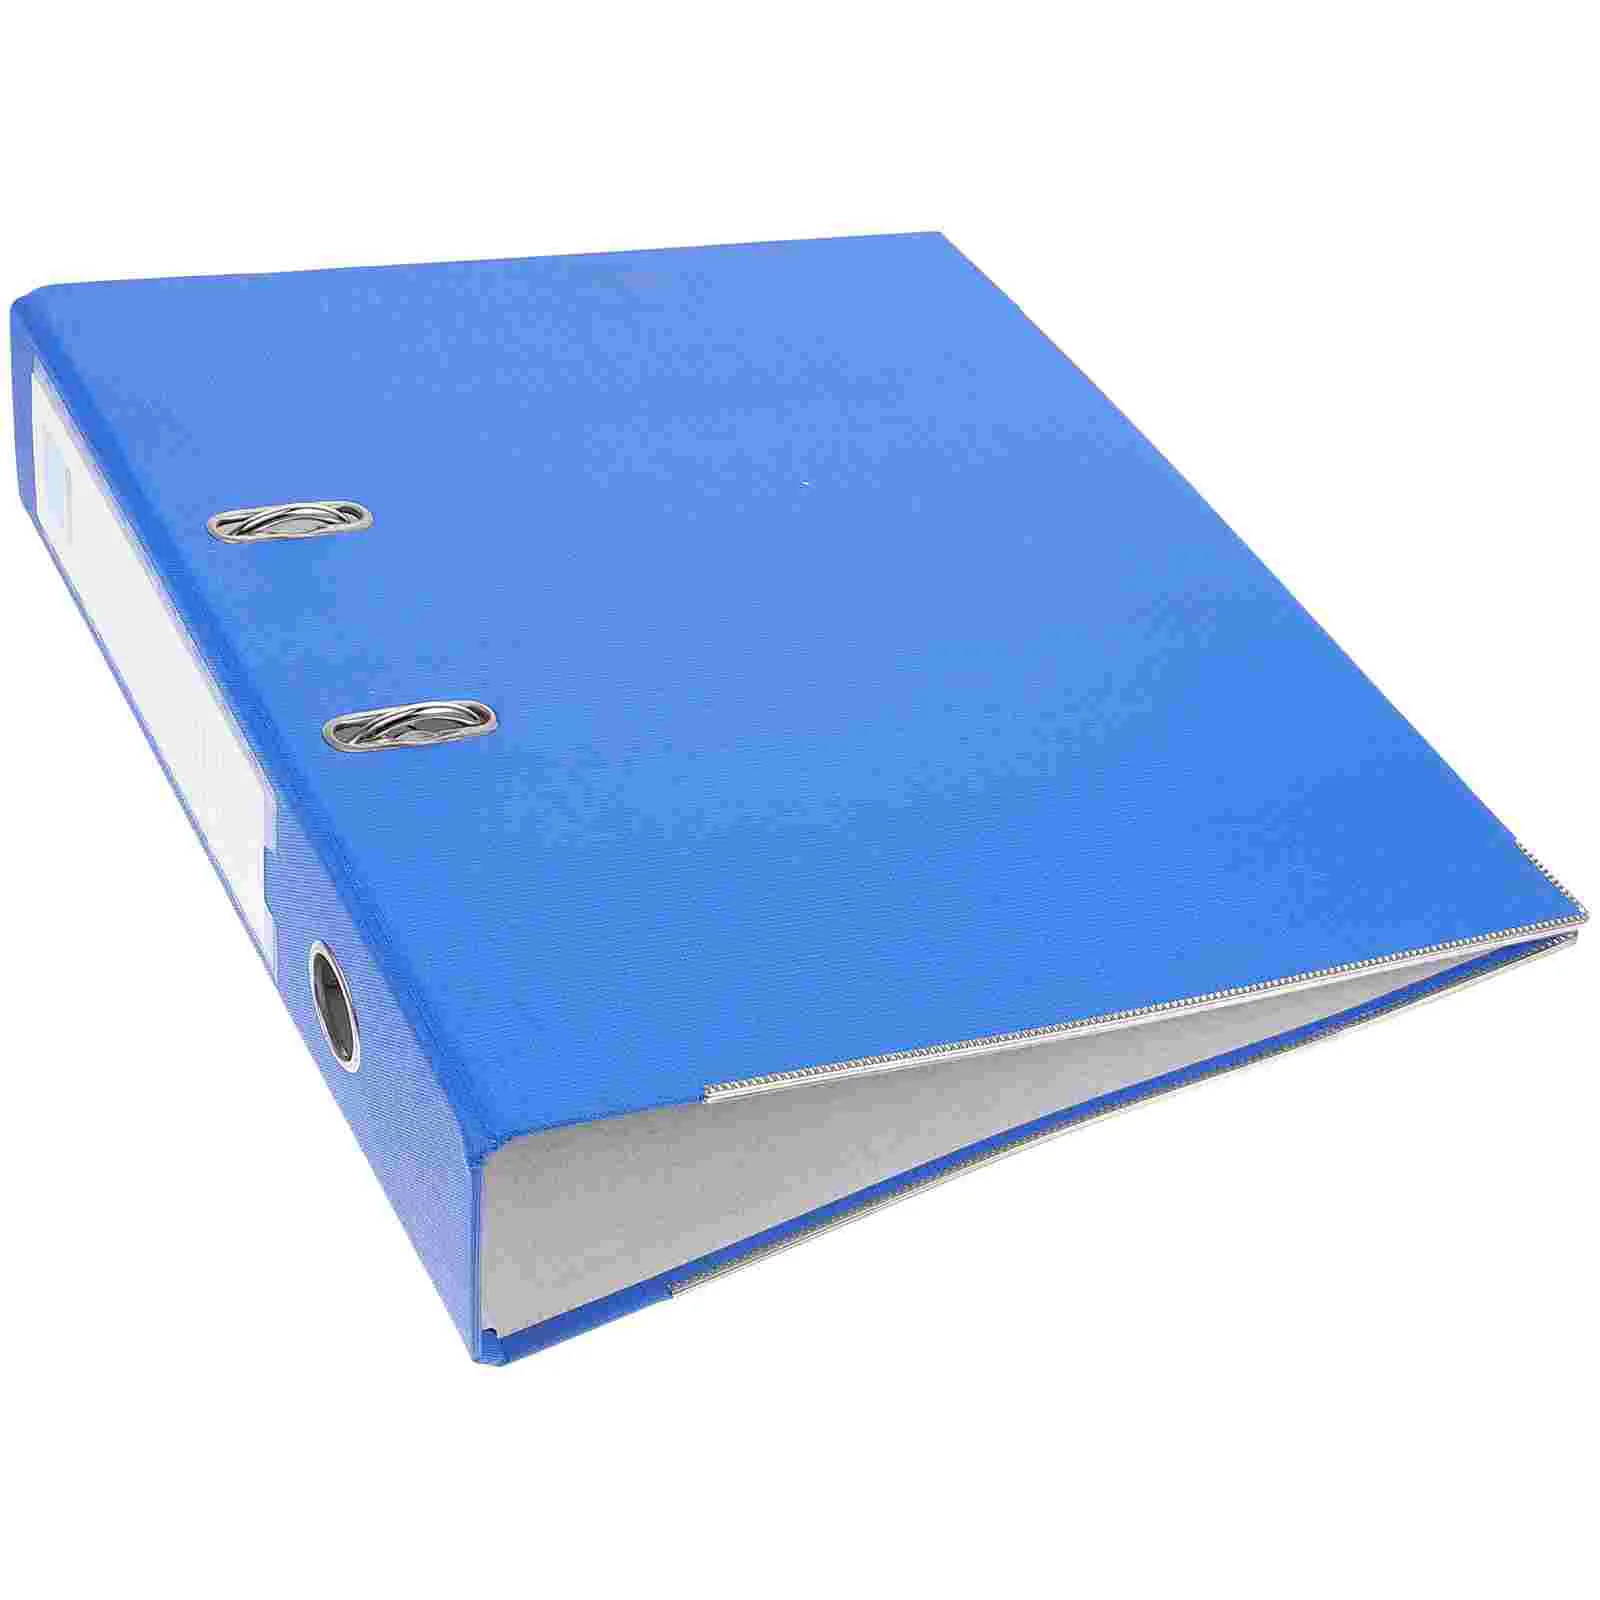 

Папка формата А4, подставка для записей, синяя офисная папка для бумаг, надежная Складная бумага, размер документа для кормления